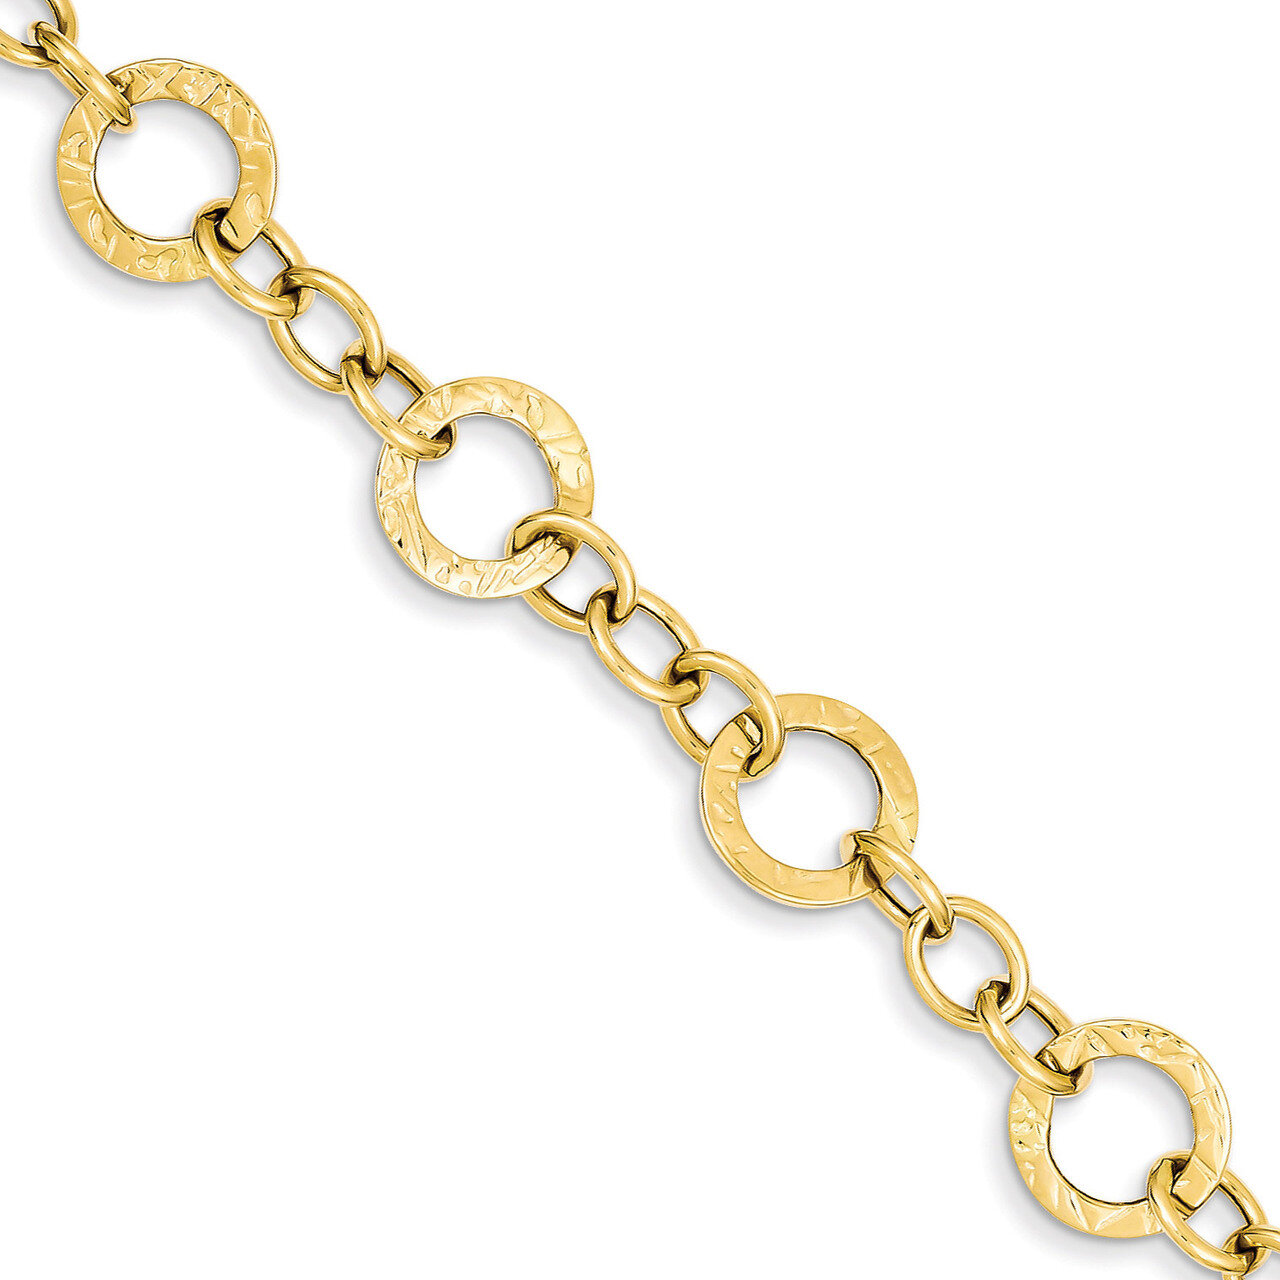 Fancy Link Bracelet 7.25 Inch 14k Gold Polished and Textured FB1396-7.25